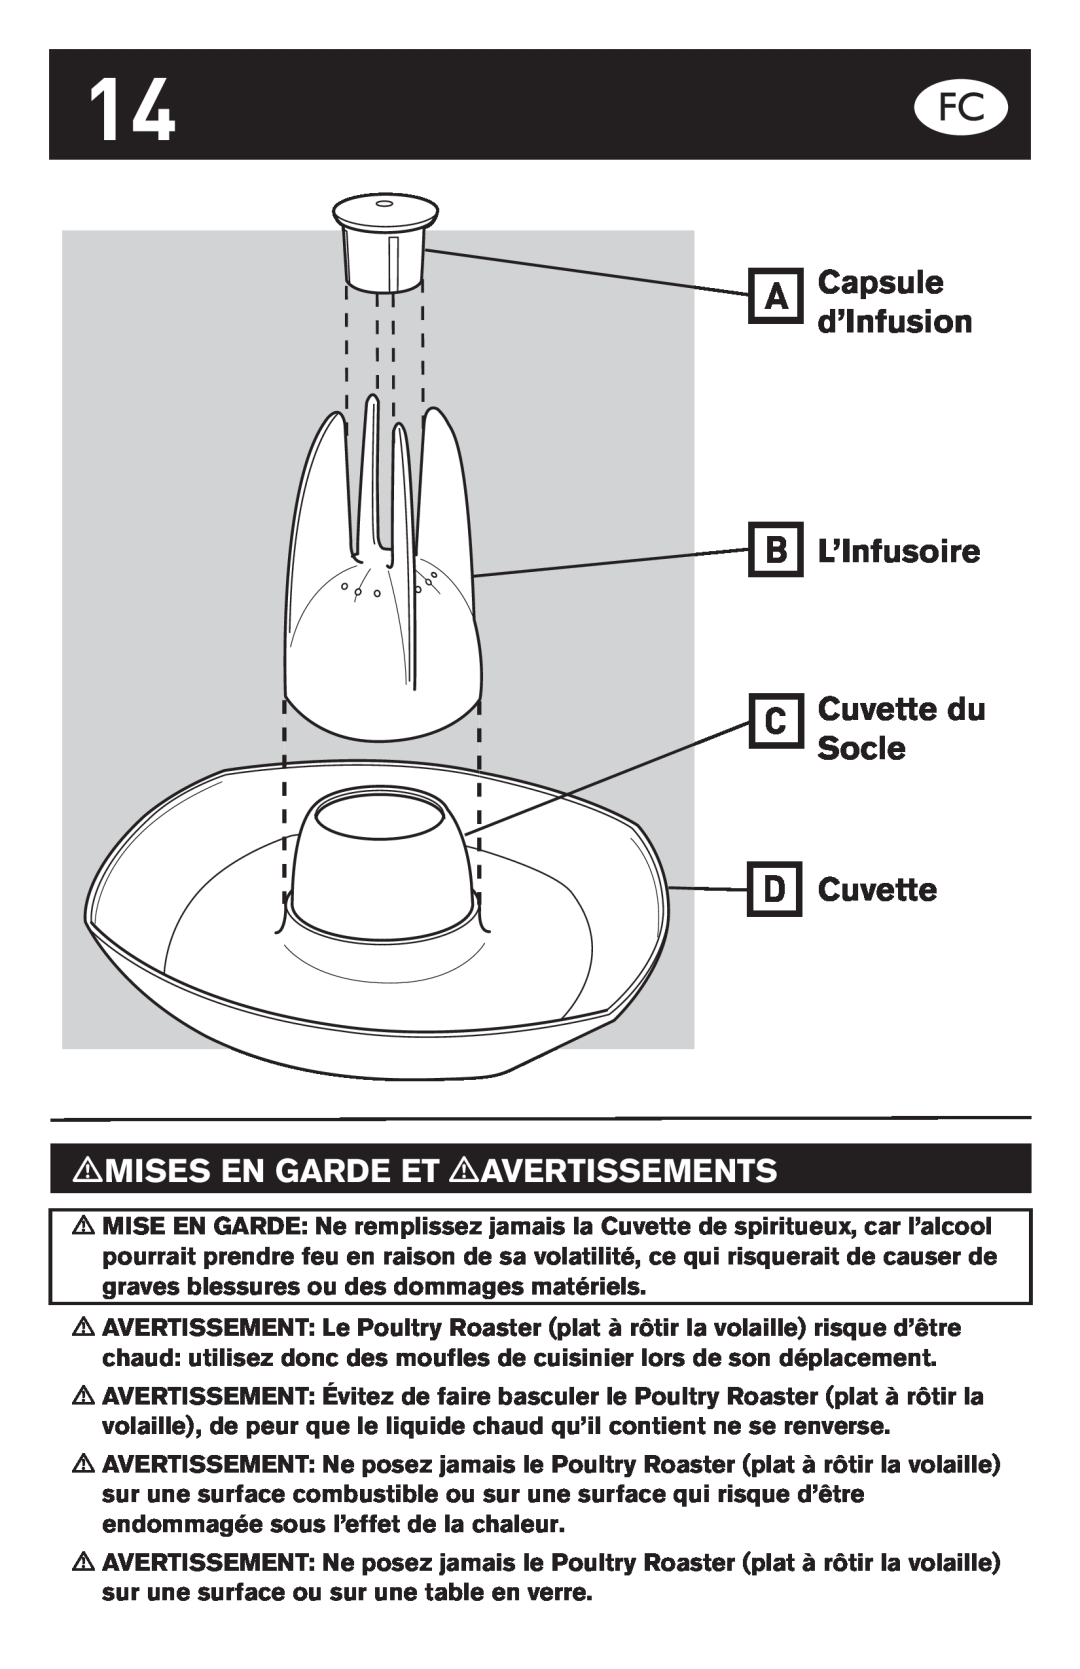 Weber Oven manual Capsule d’Infusion L’Infusoire Cuvette du Socle, mMISES EN GARDE ET mAVERTISSEMENTS 